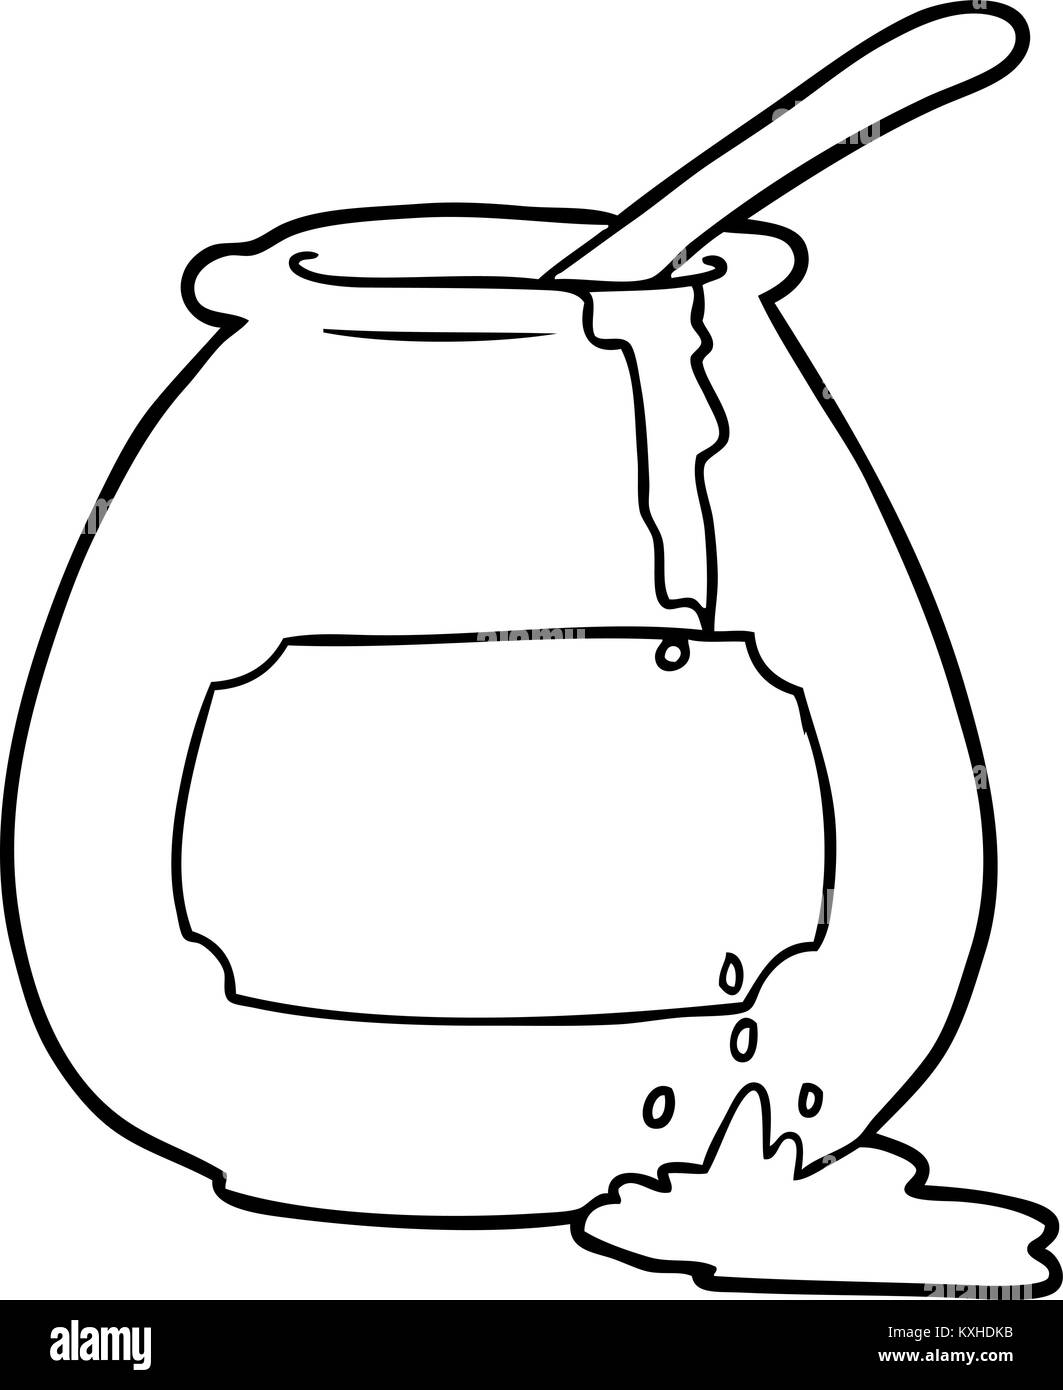 Le dessin des lignes d'un pot de miel Image Vectorielle Stock - Alamy